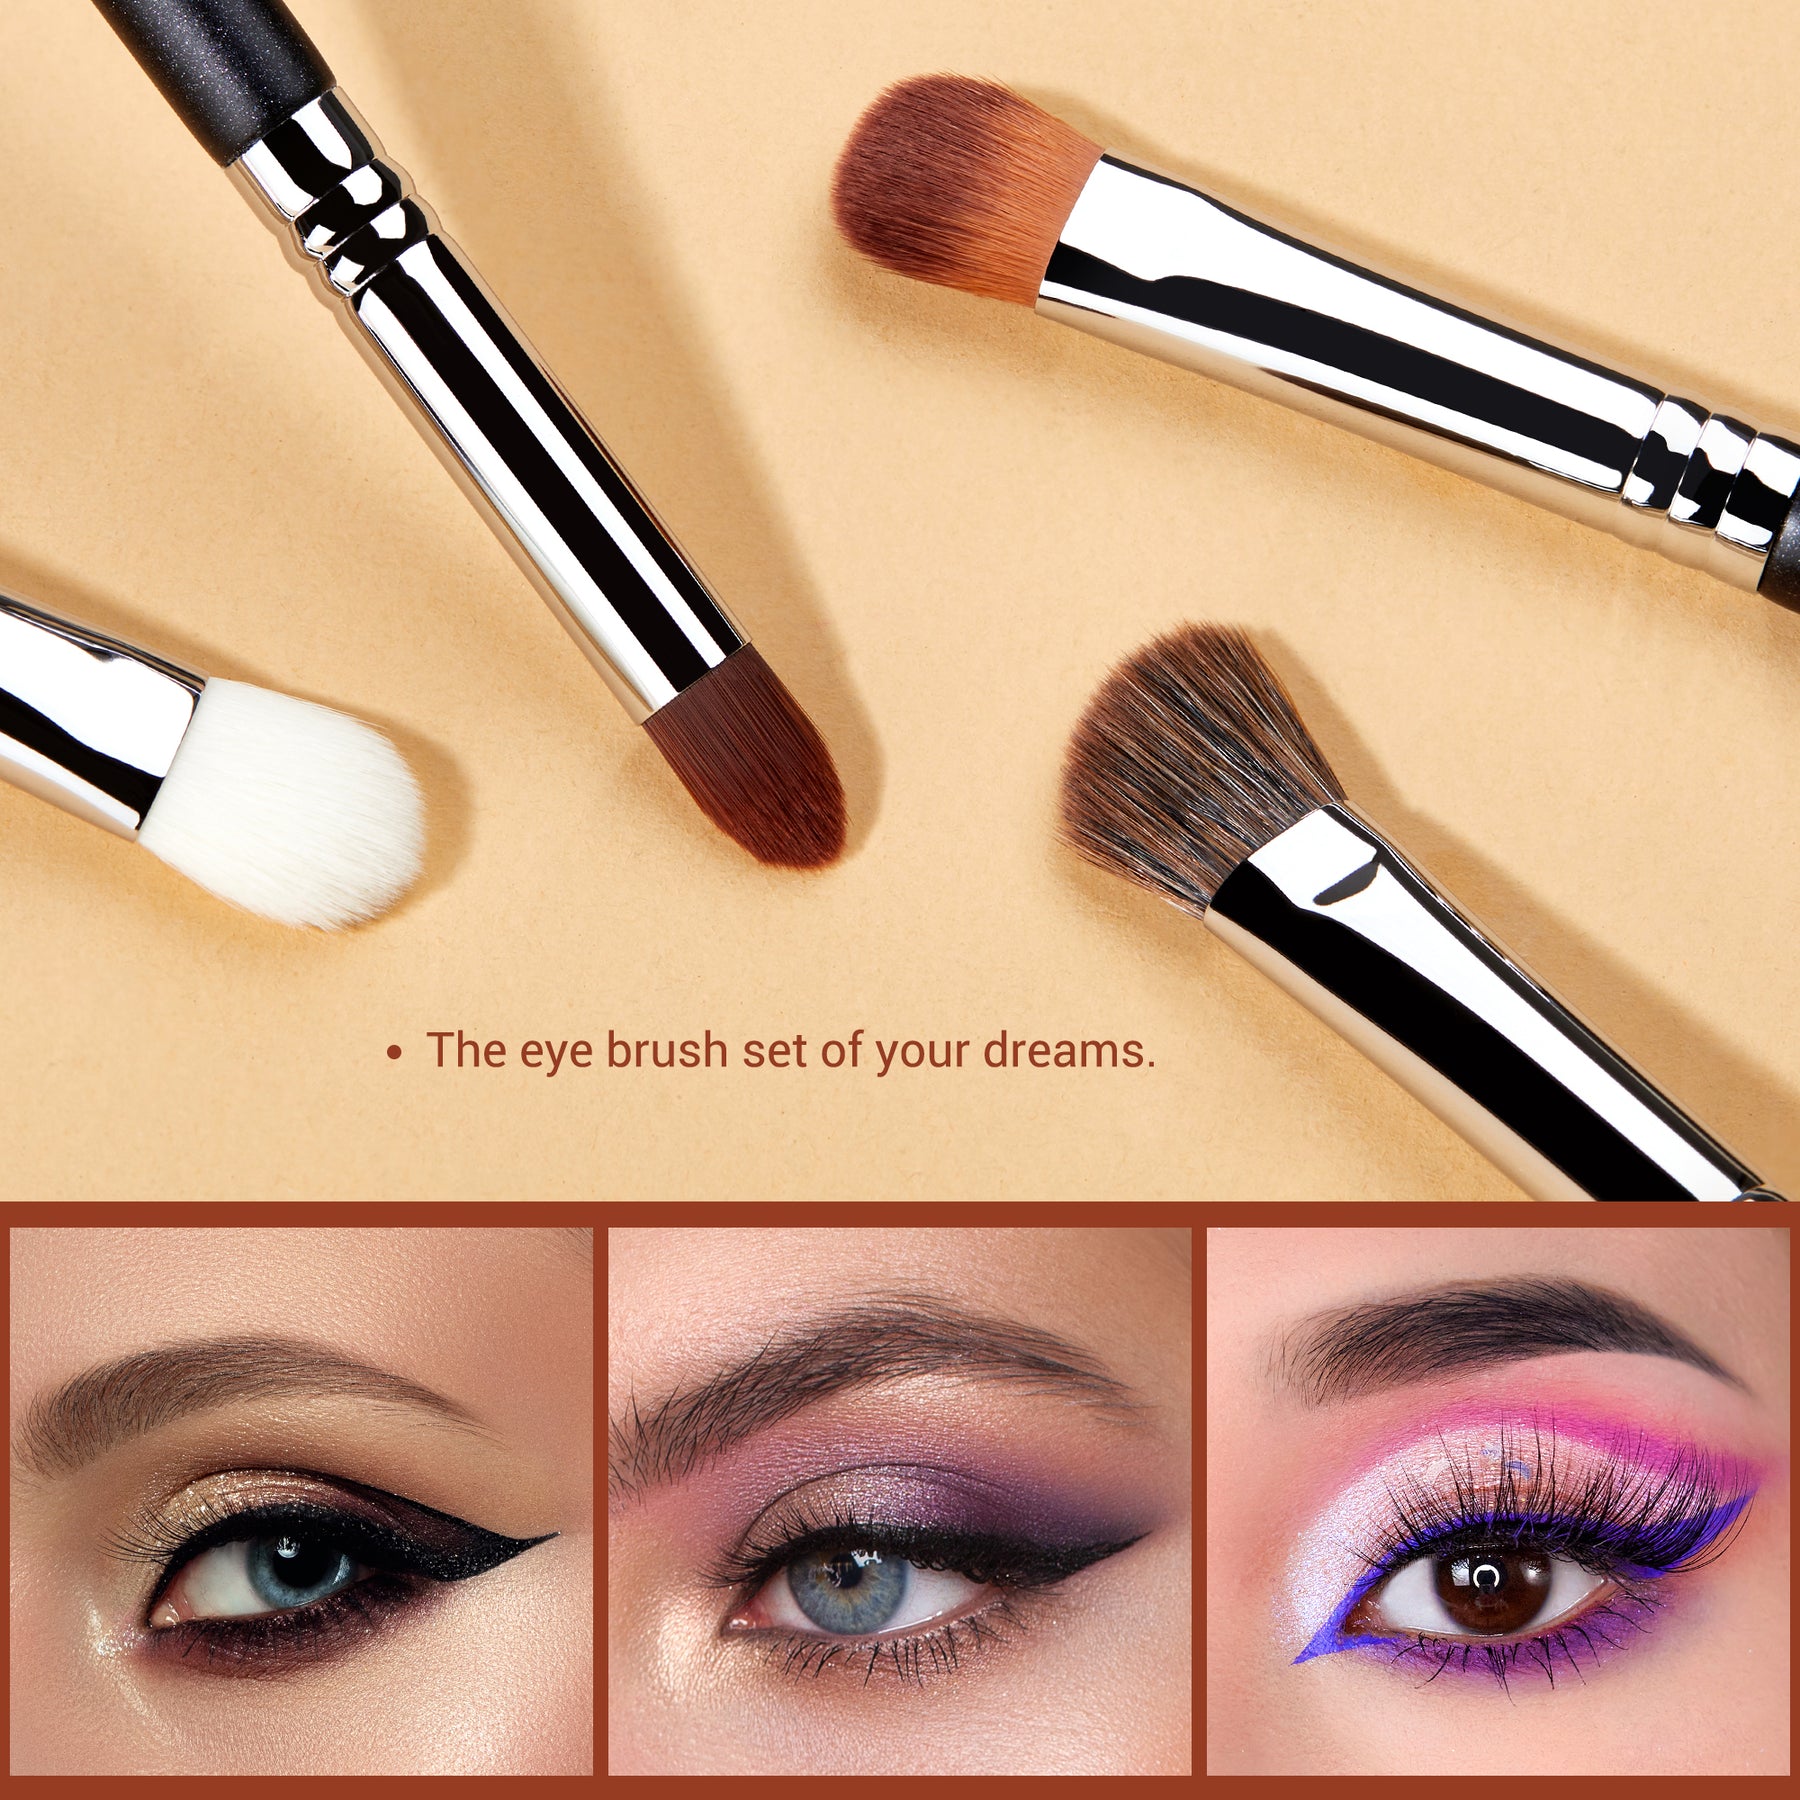 Jessup Eyeshadow Brush Set Pink Eye Makeup Brushes Concealer Brush Premium  Vegan Eyeshadow liner Blending Brush for Makeup, T496